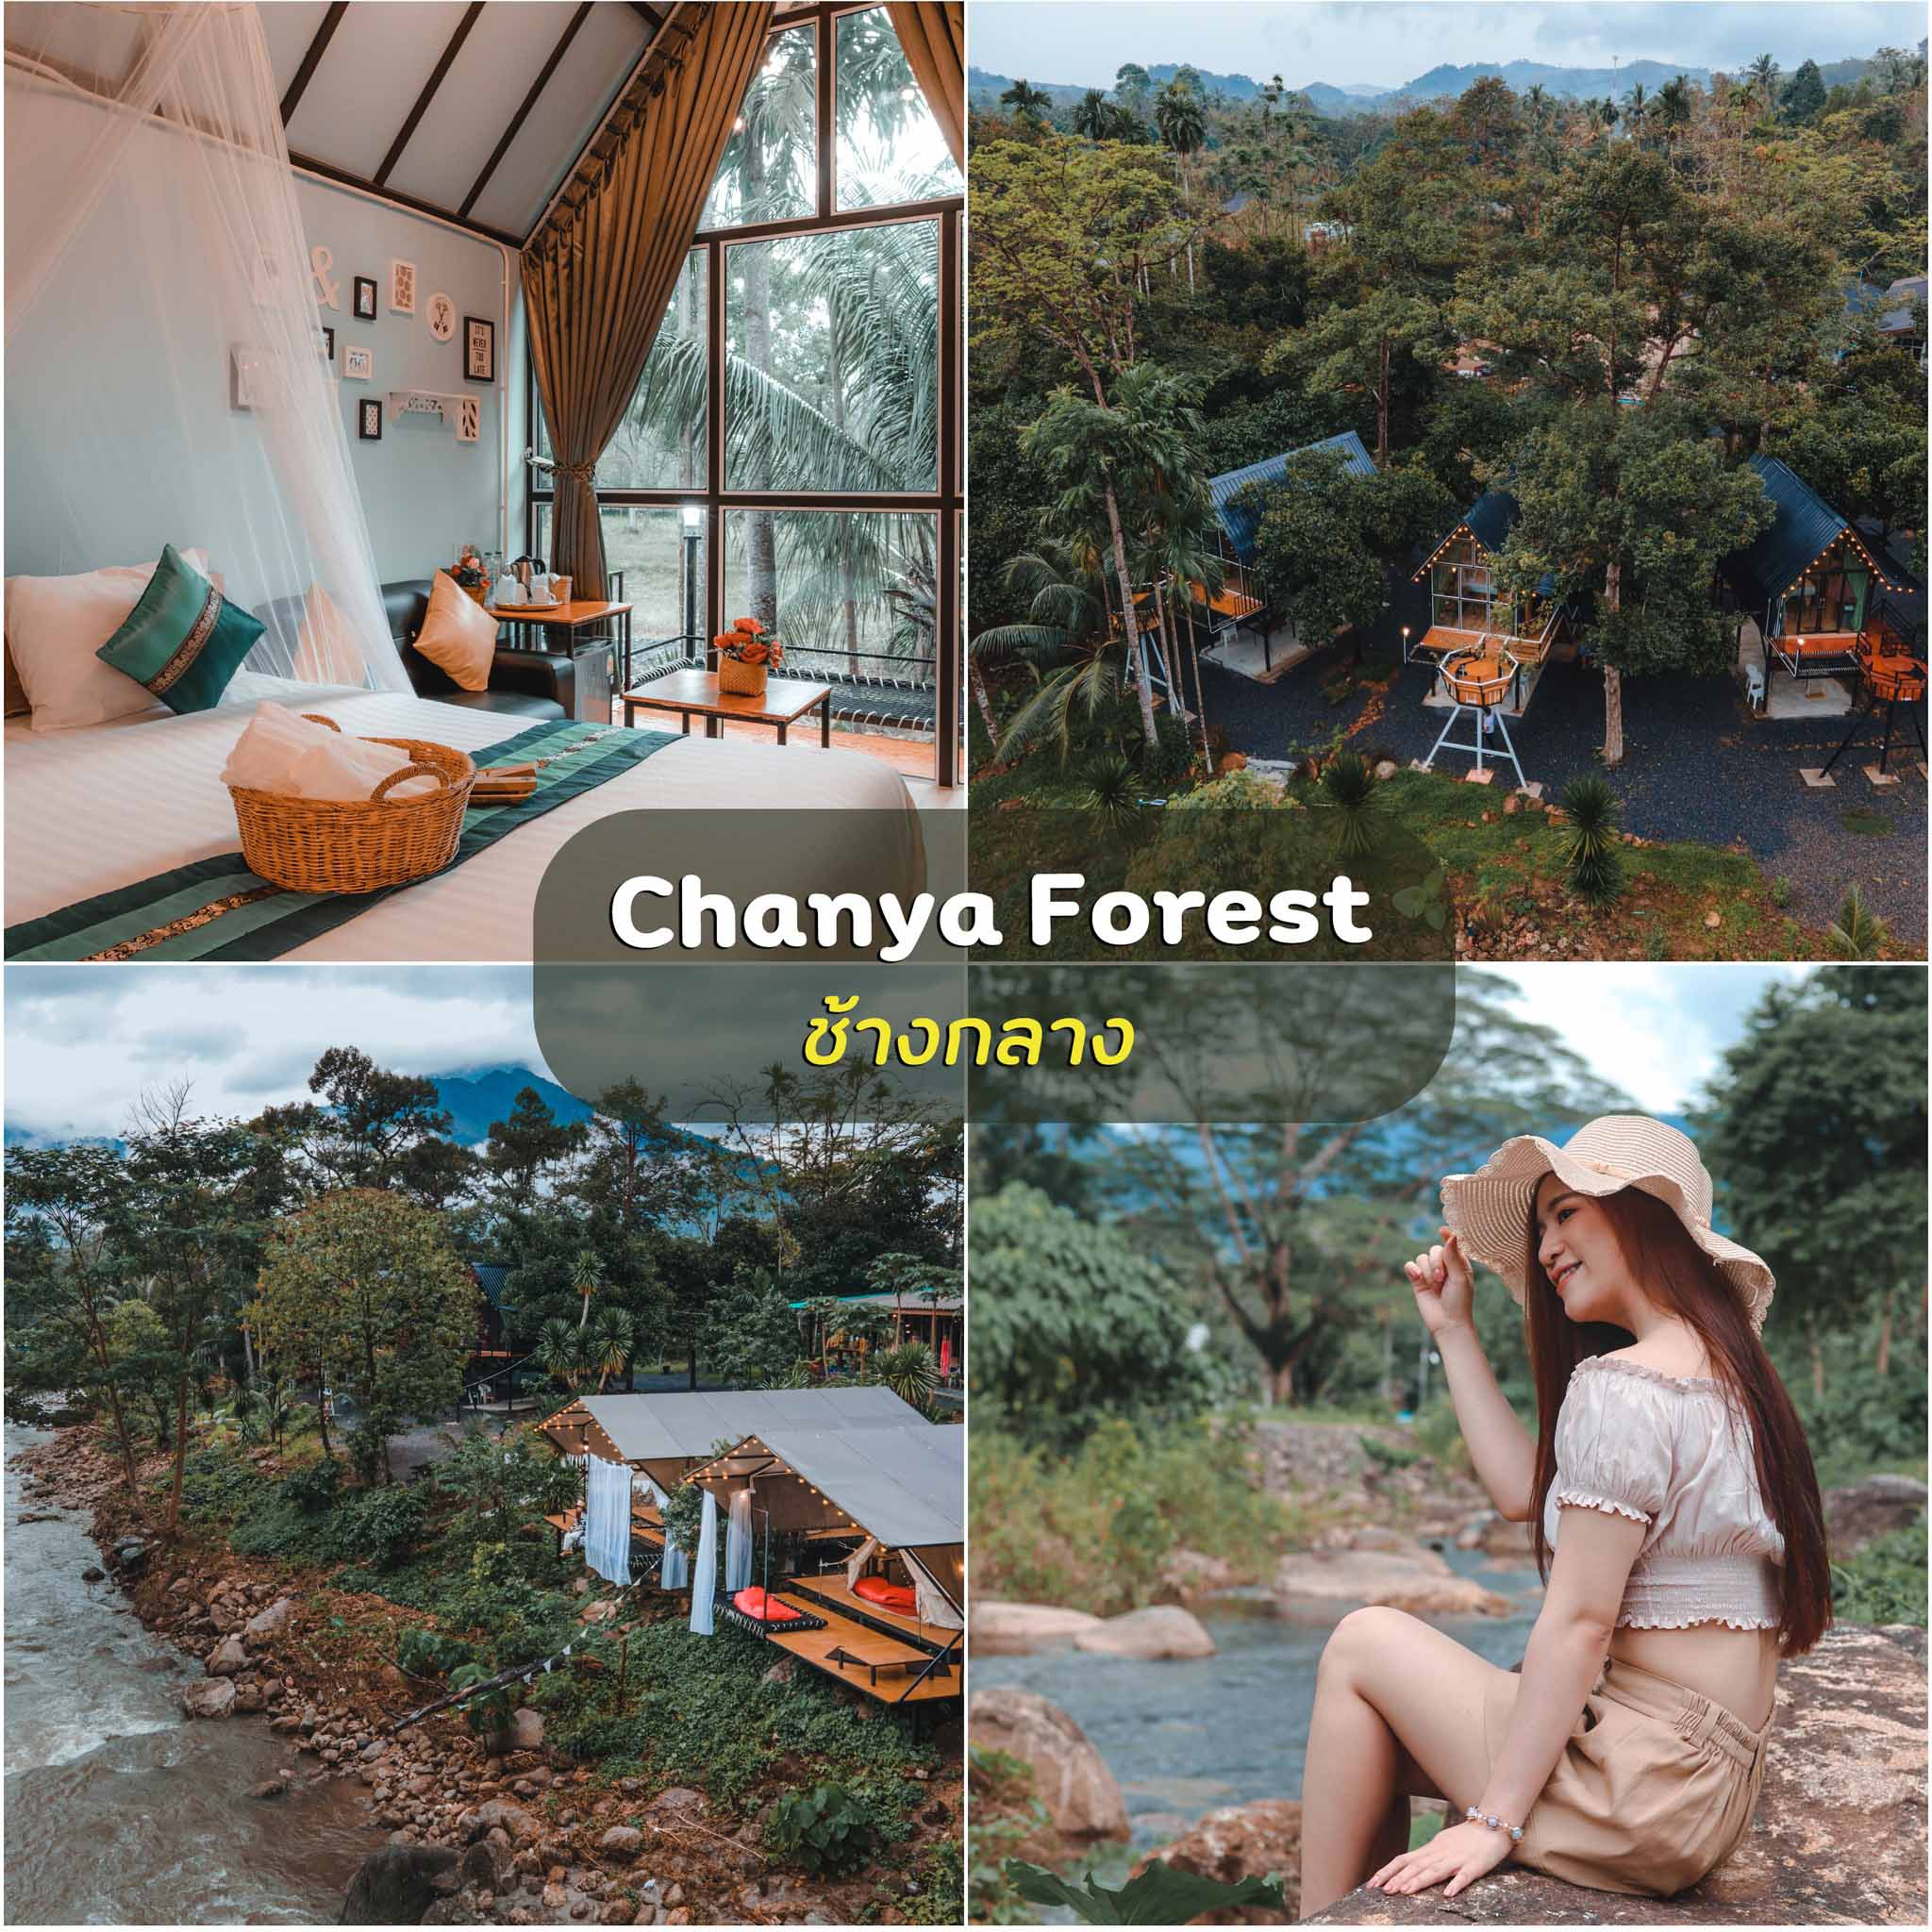 Chanya-Forest-Resort -อีกหนึ่งที่พักวิวหลักล้านริมลำธารกลางหุบเขาช้างกลาง-สวยแน่นอนแอดคอนเฟิร์มฮะ-
 ที่เที่ยวธรรมชาตินครศรีธรรมราช,นครศรี,จุดเช็คอิน,ที่พัก